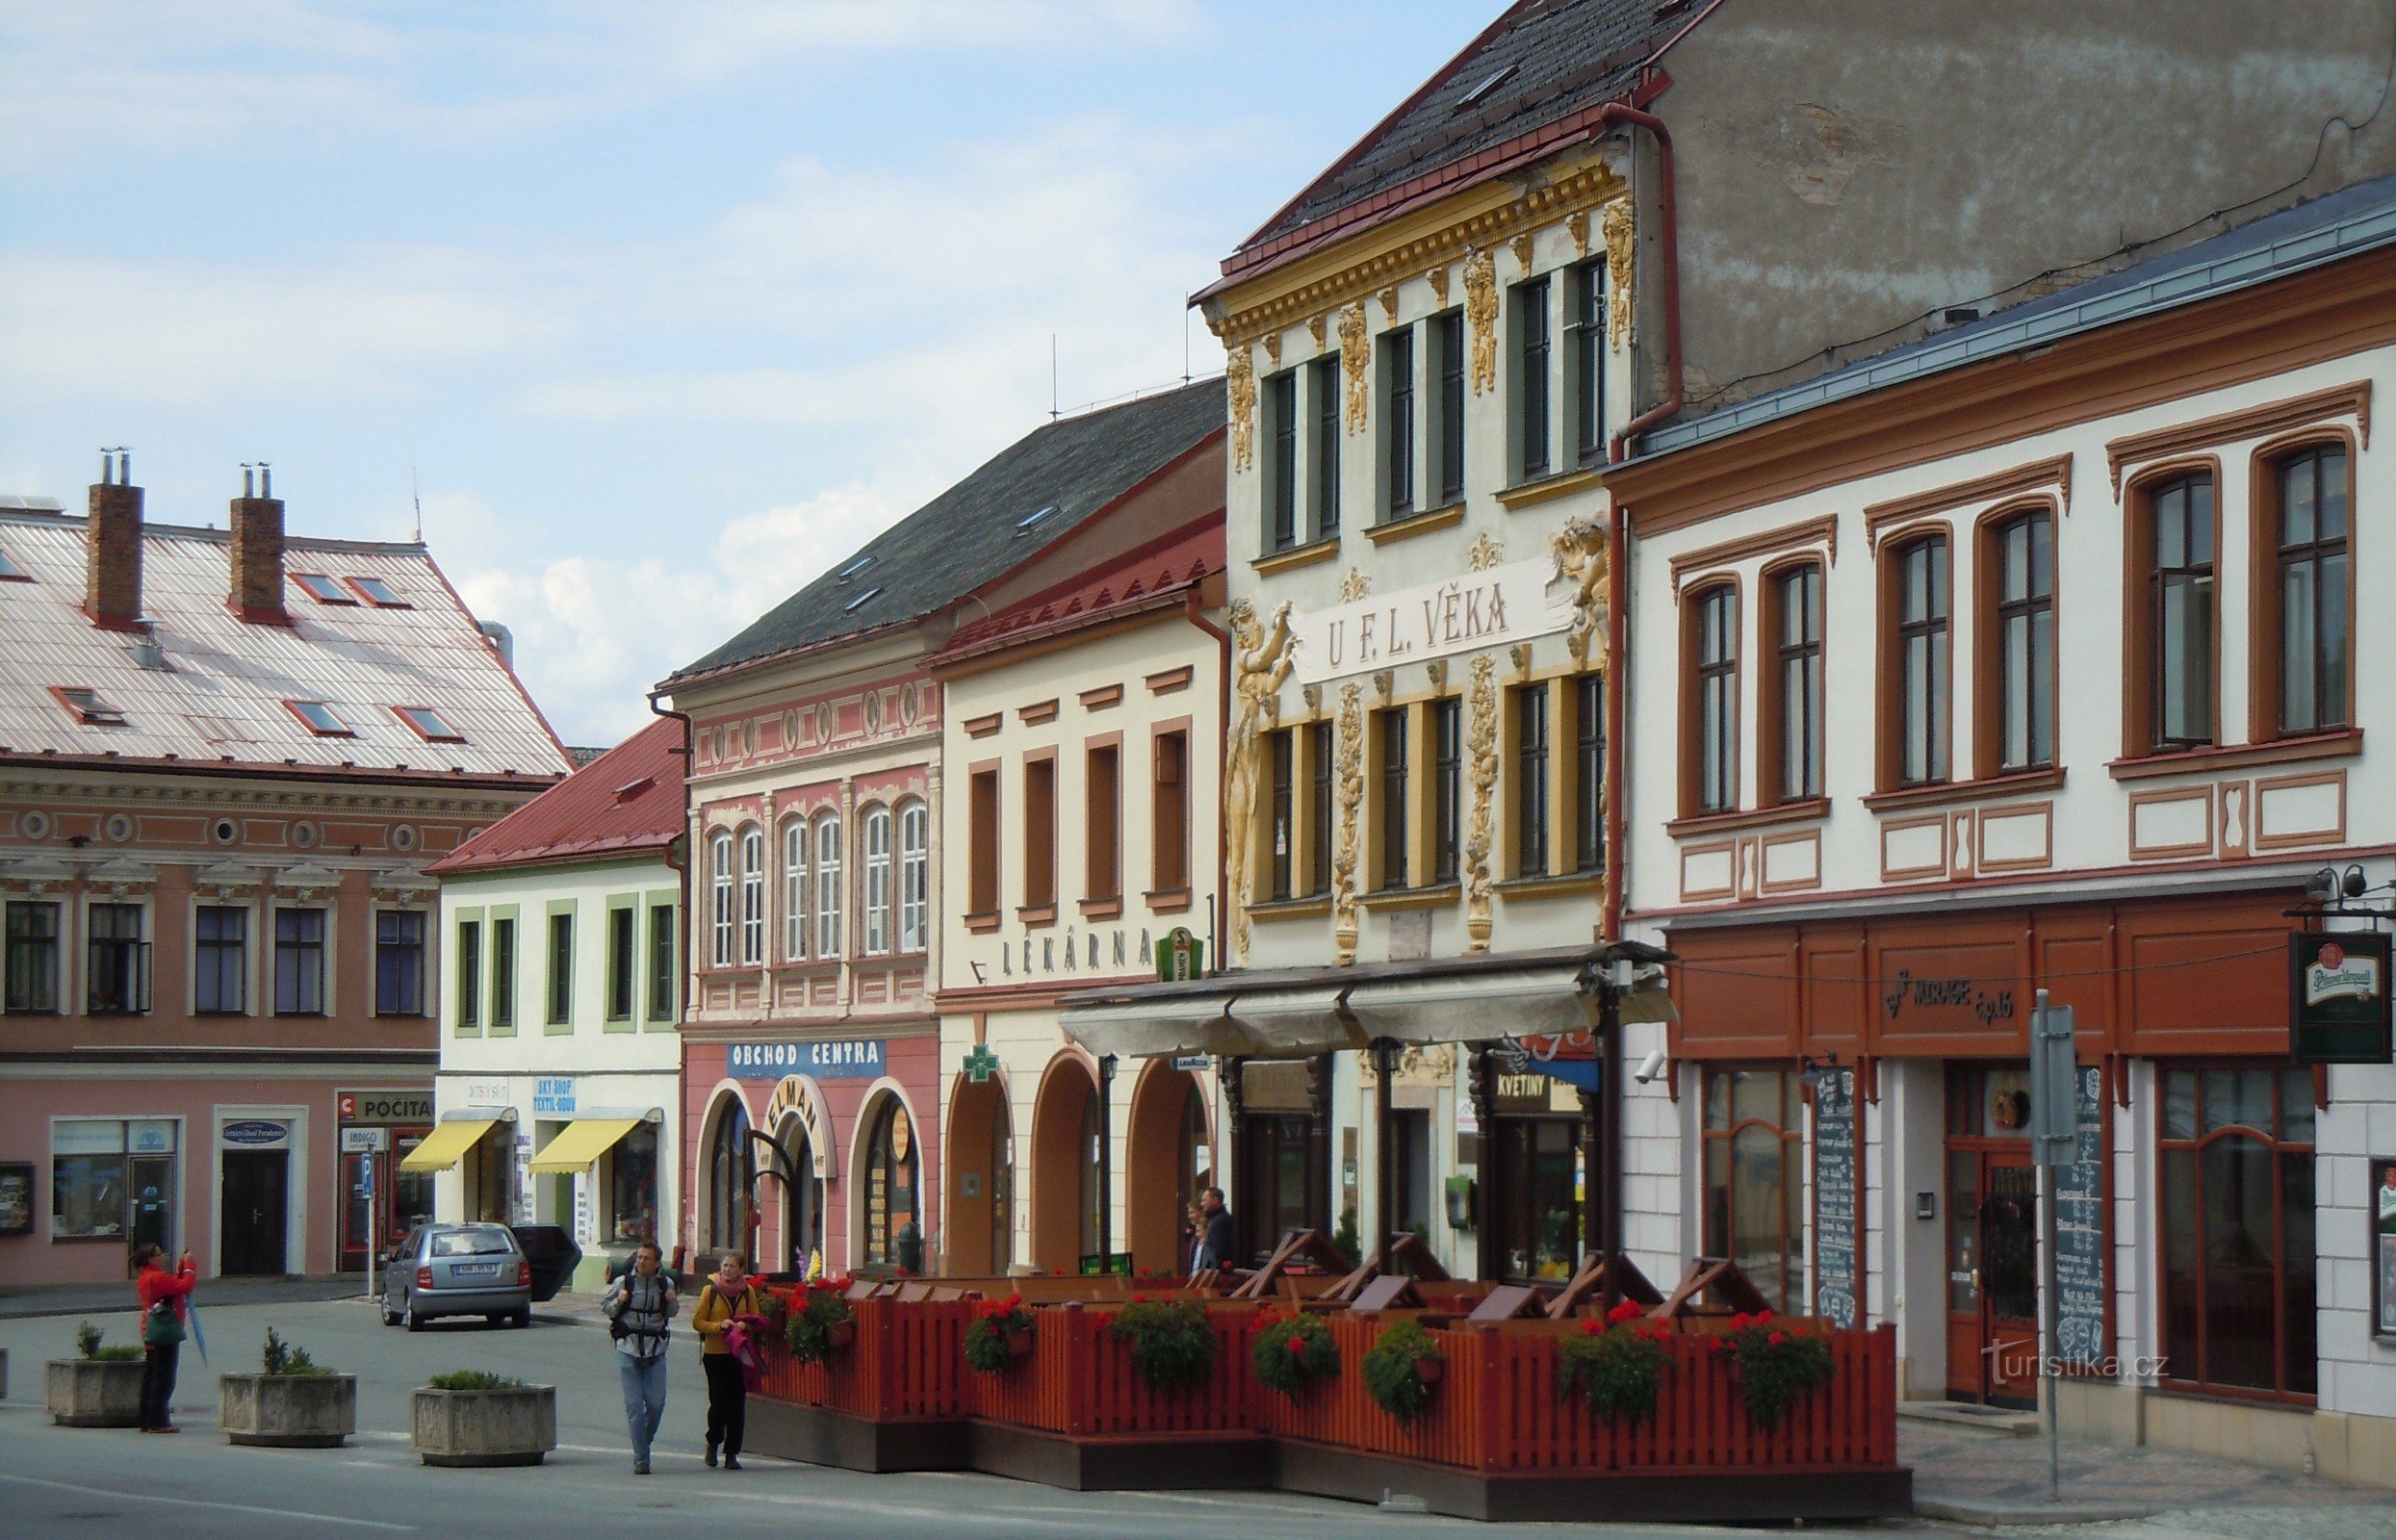 Dobruška - square